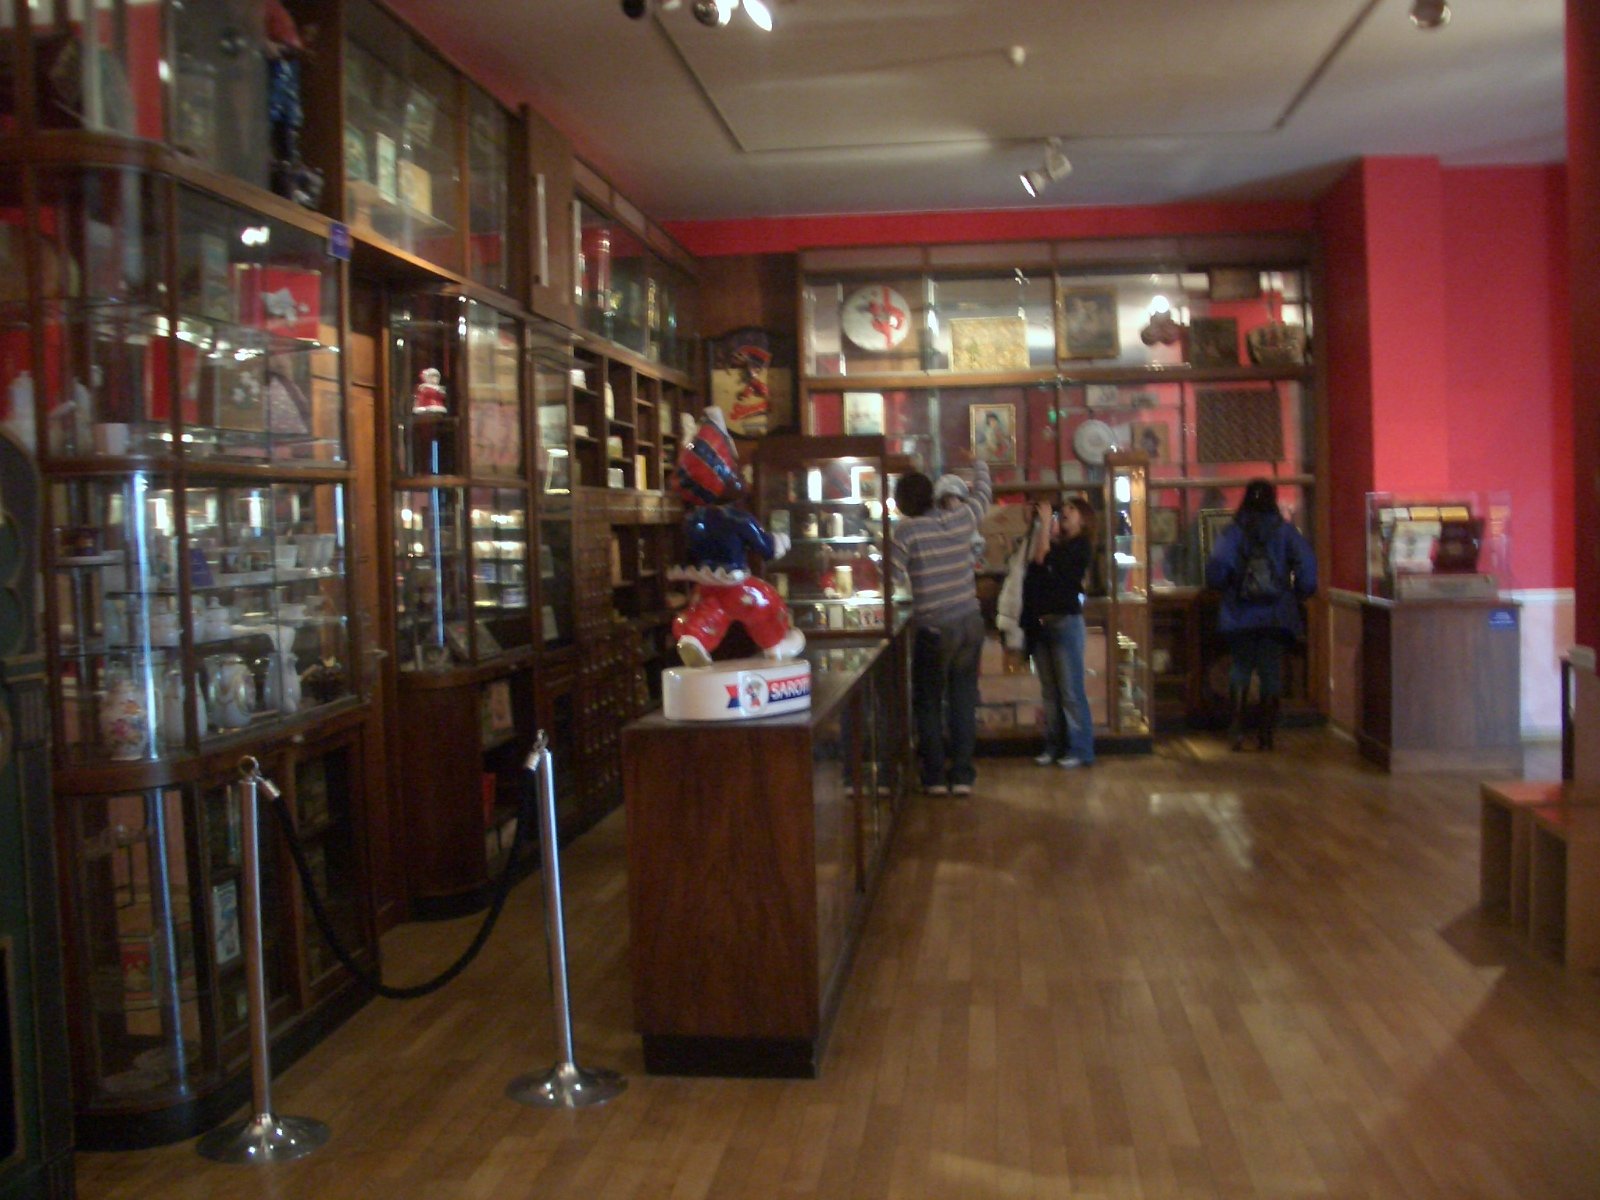 Le musée du chocolat de Cologne - notre avis et astuces